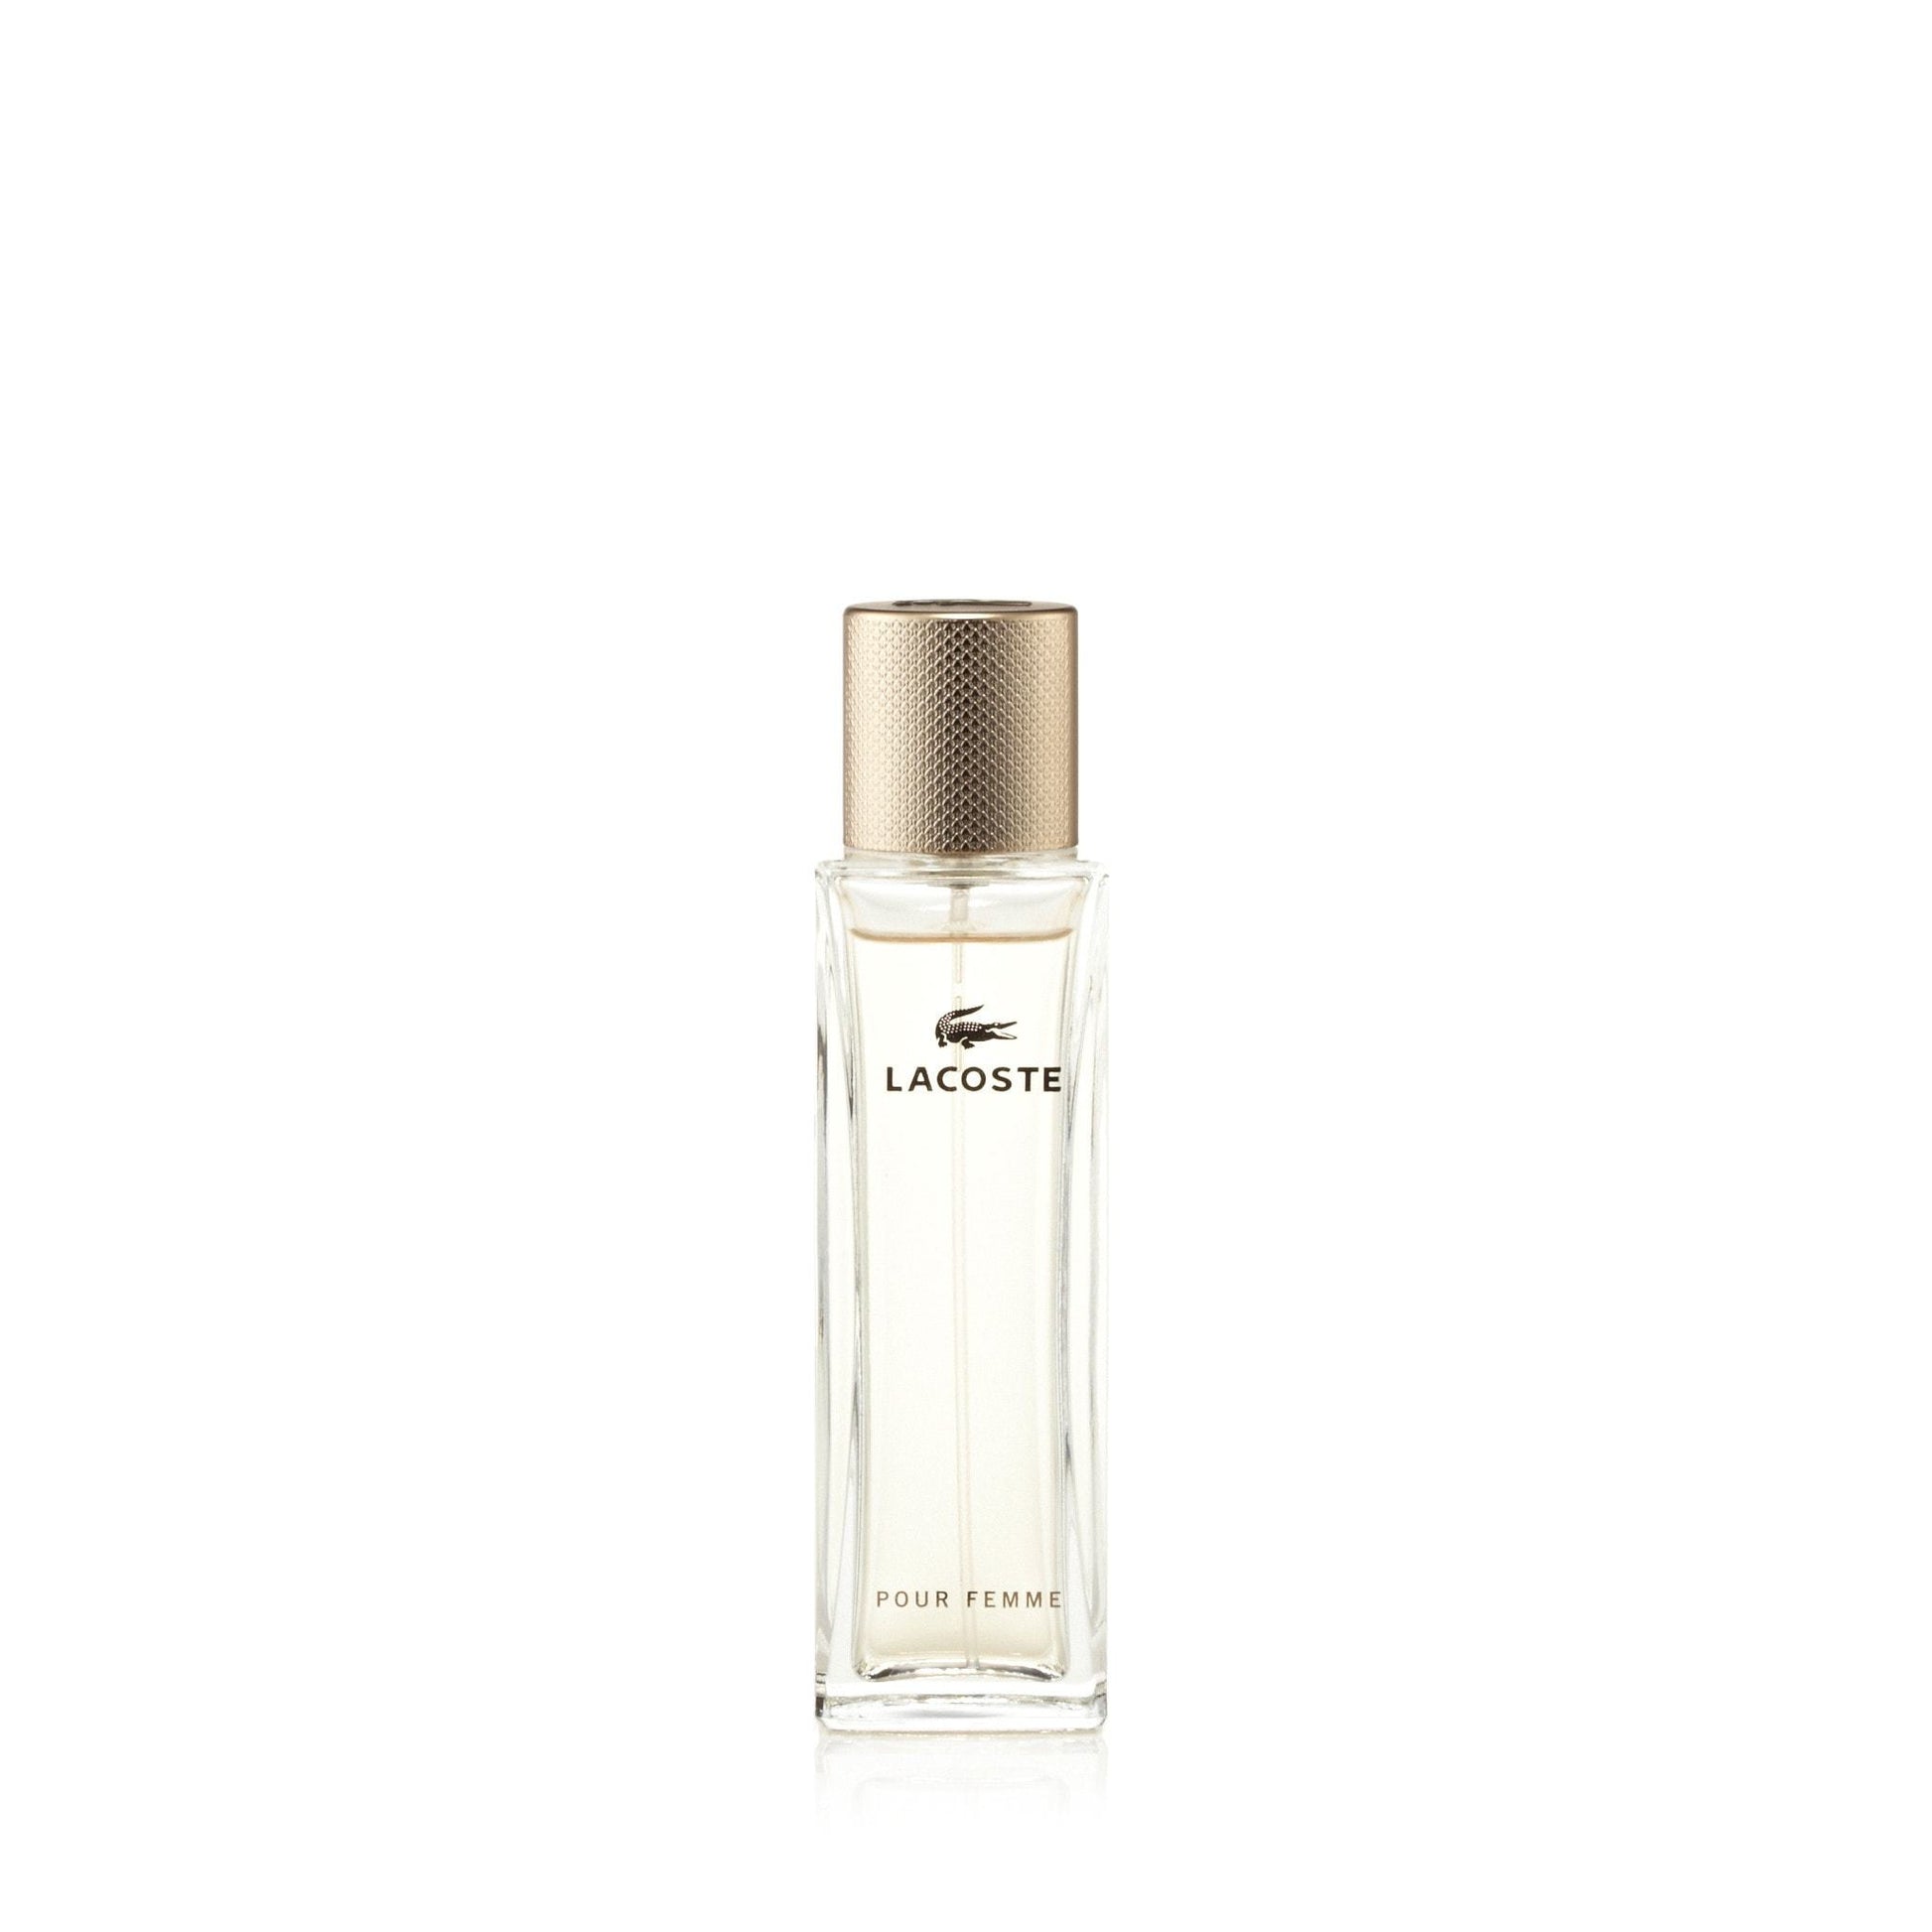 Lacoste Pour Femme Eau de Parfum Spray for Women by Lacoste, Product image 2